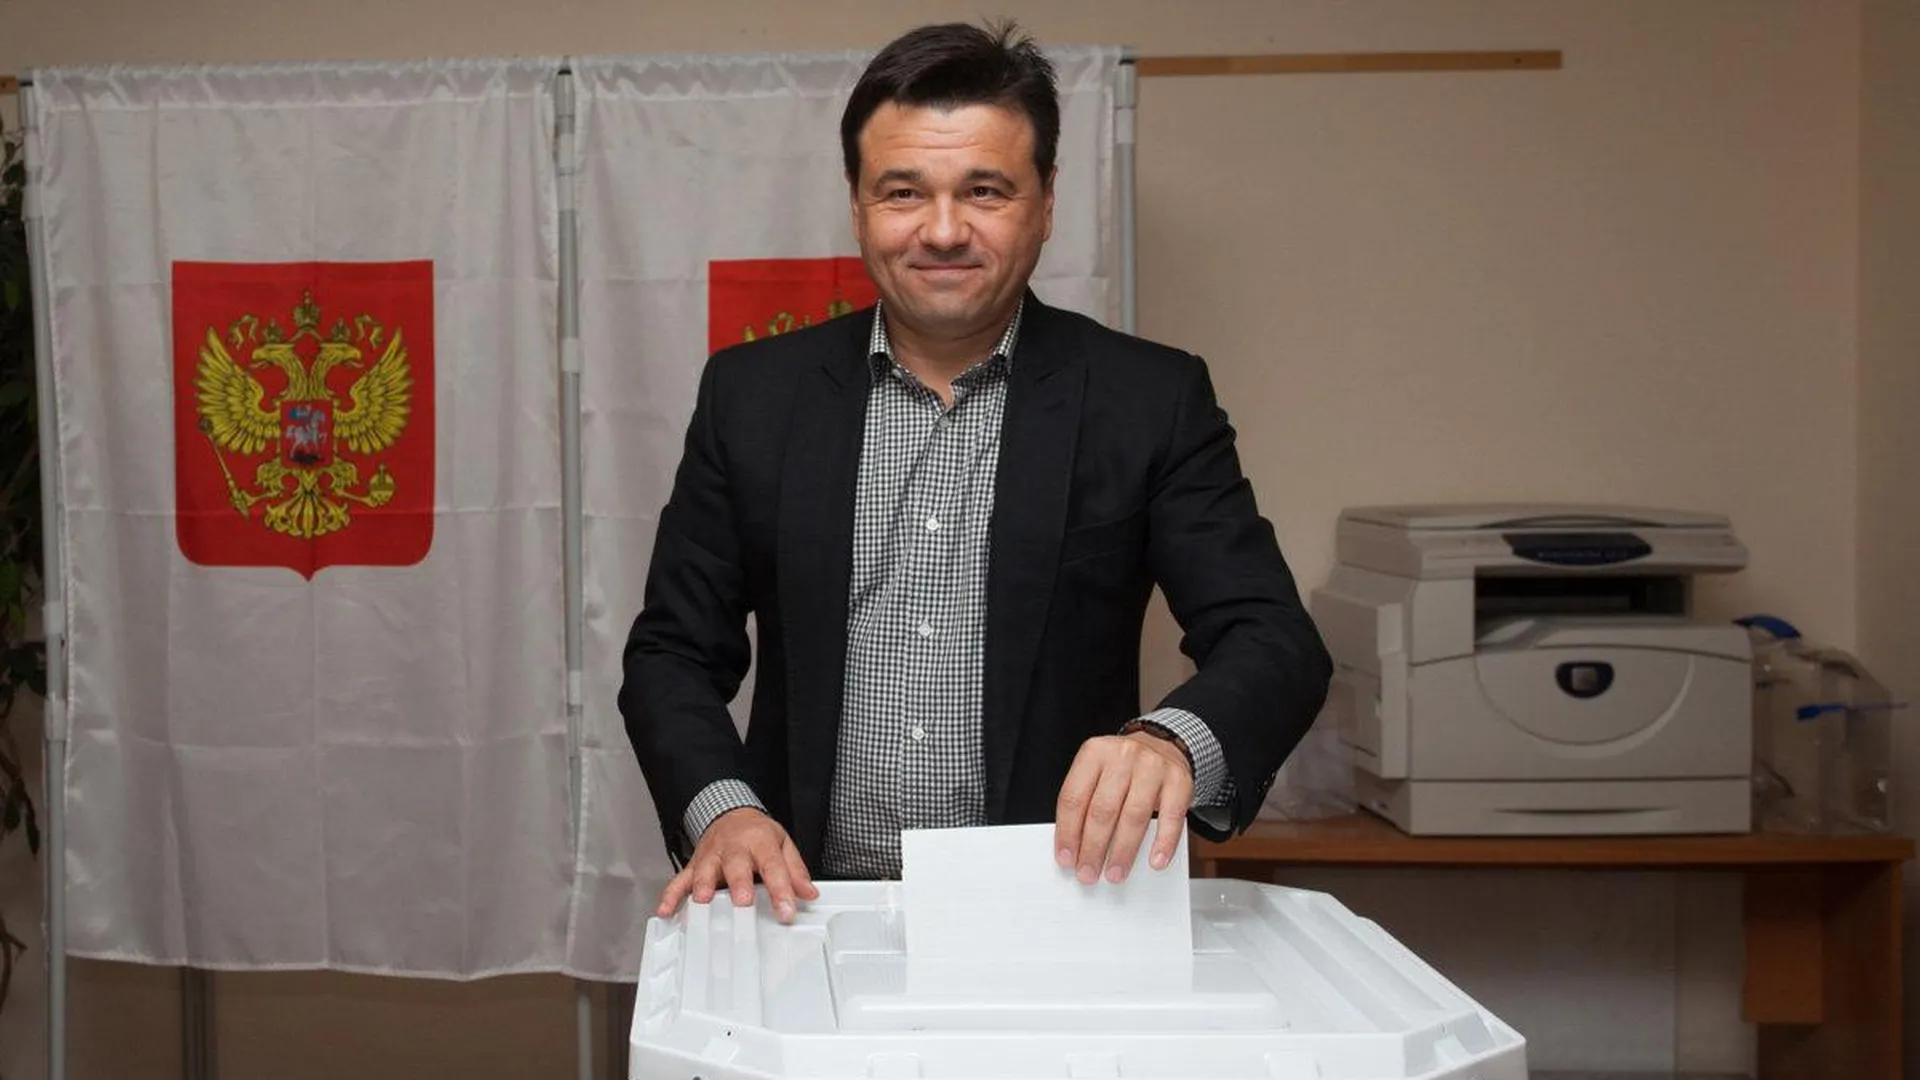 Воробьев проголосует на избирательном участке в Одинцовском районе 18 сентября